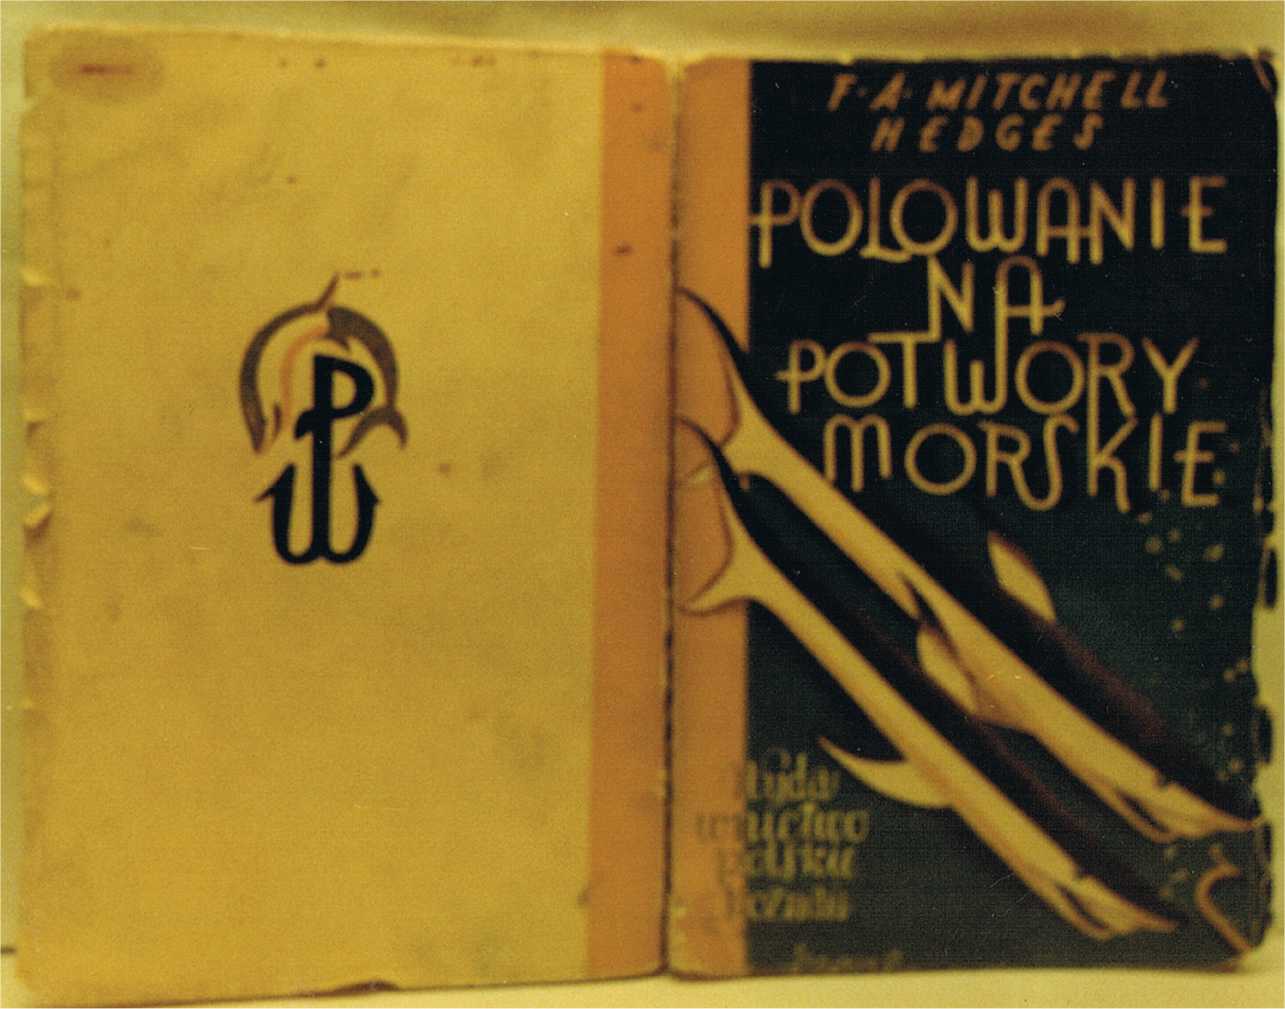 F.A. Mitchell Hedges: Polowanie na potwory morskie. Wydawnictwo Polskie, Pozna� 1927 - ok�adka zewn�trzna